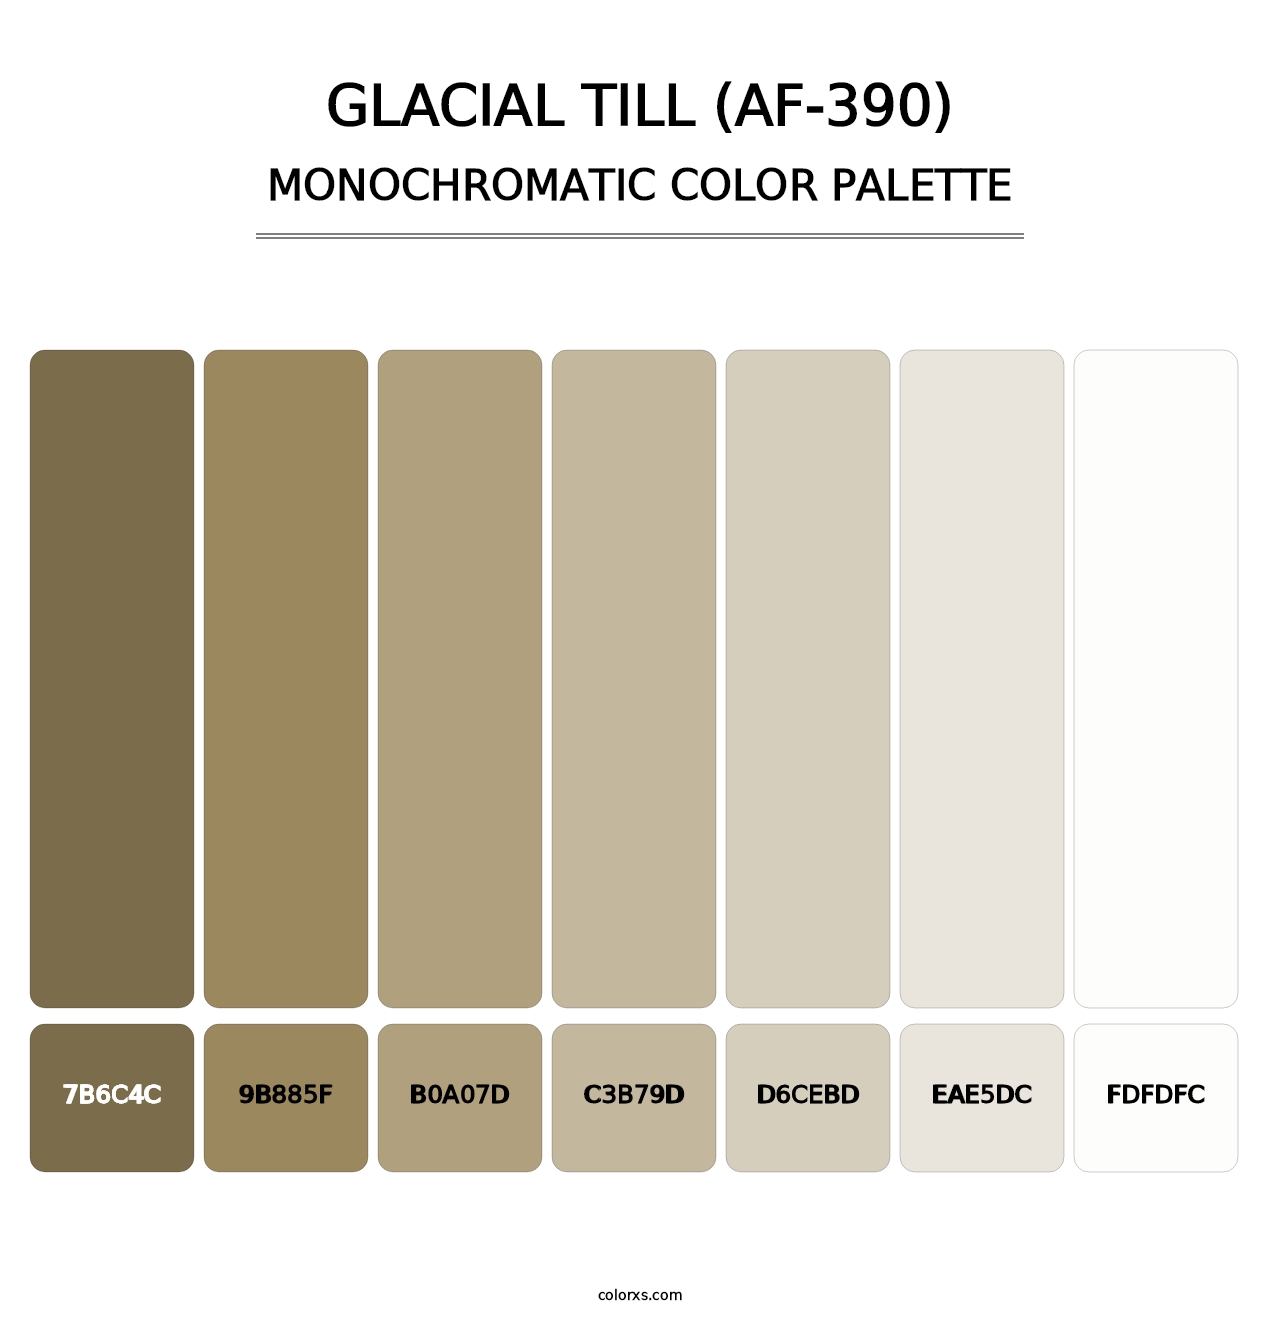 Glacial Till (AF-390) - Monochromatic Color Palette